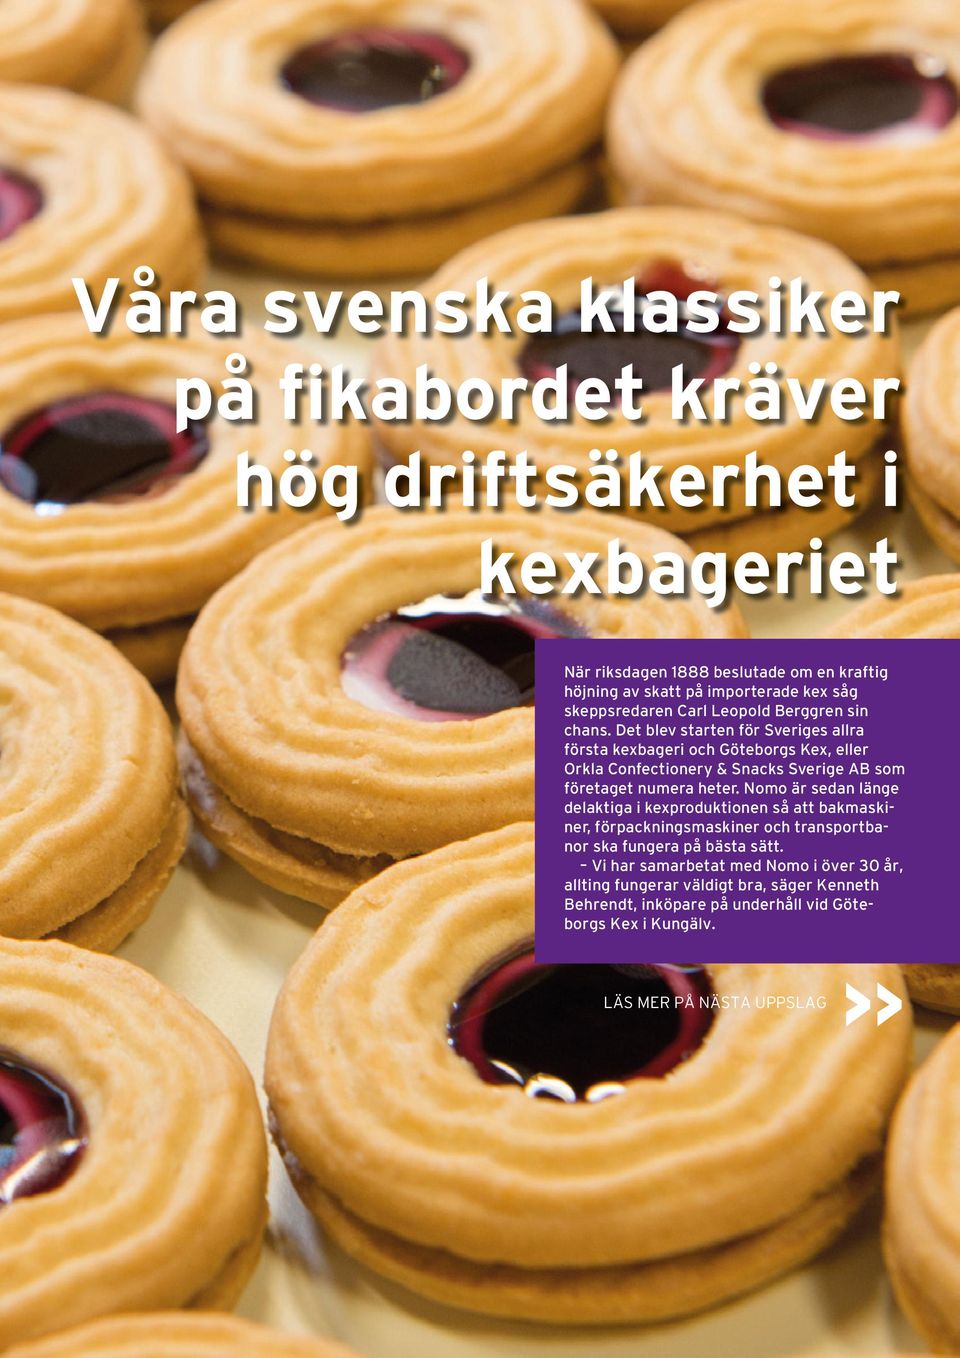 Det blev starten för Sveriges allra första kexbageri och Göteborgs Kex, eller Orkla Confectionery & Snacks Sverige AB som företaget numera heter.